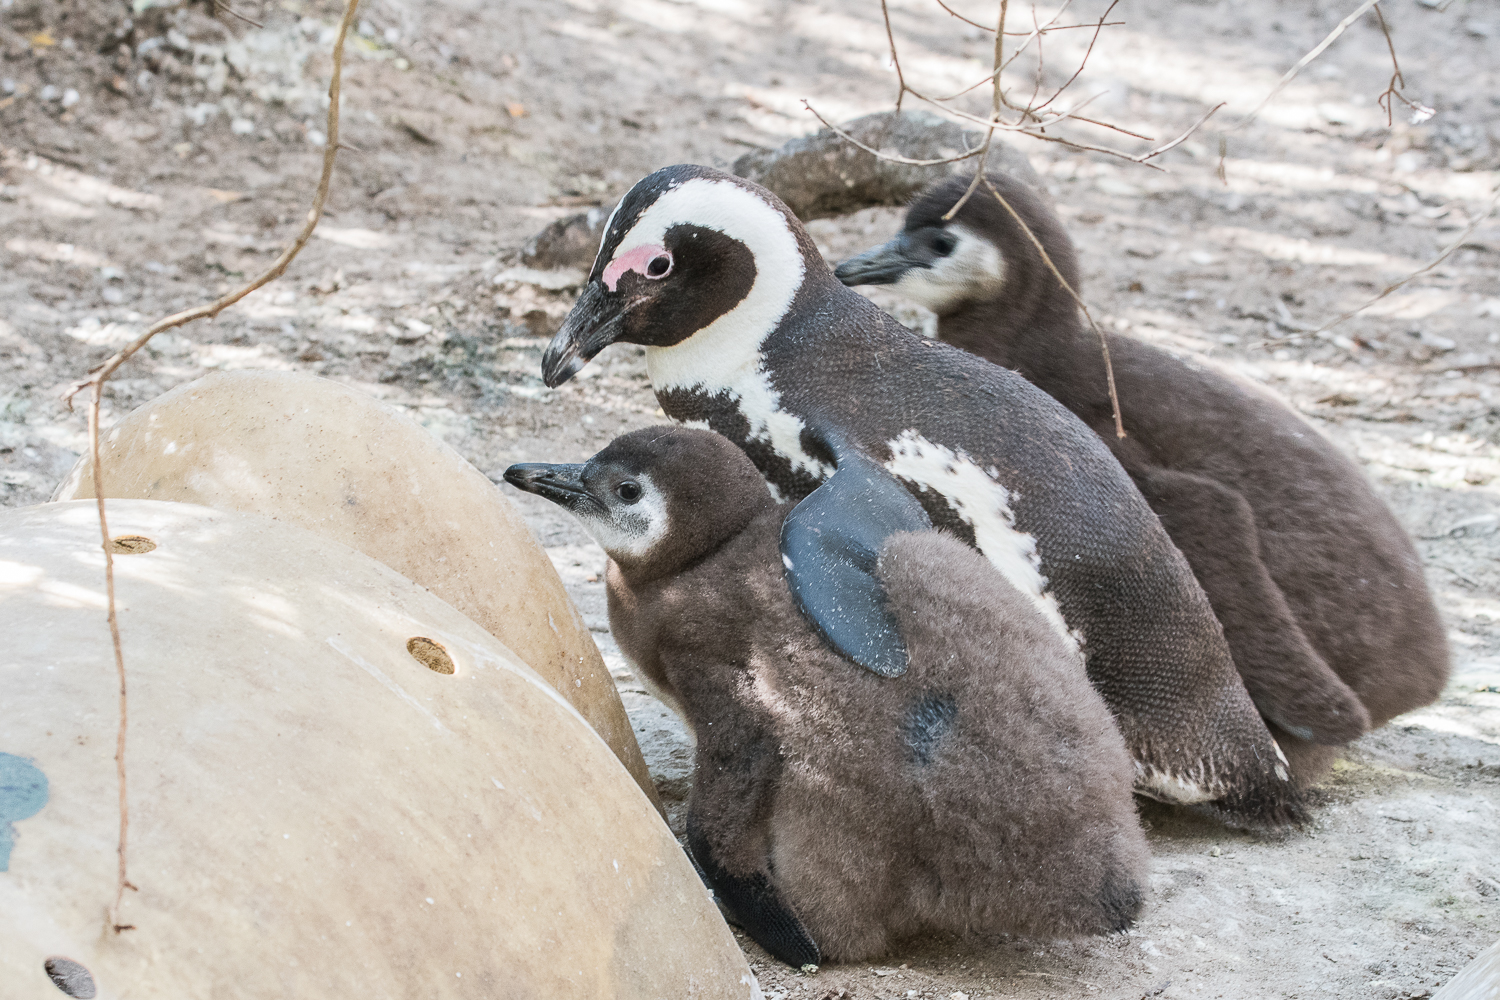 Manchots du Cap (African Penguin, Sphenicus Demersus), Boulders’ beach : Nourrissage apparemment terminé, ils sont pleins à craquer ! Allez, on rentre au nichoir !